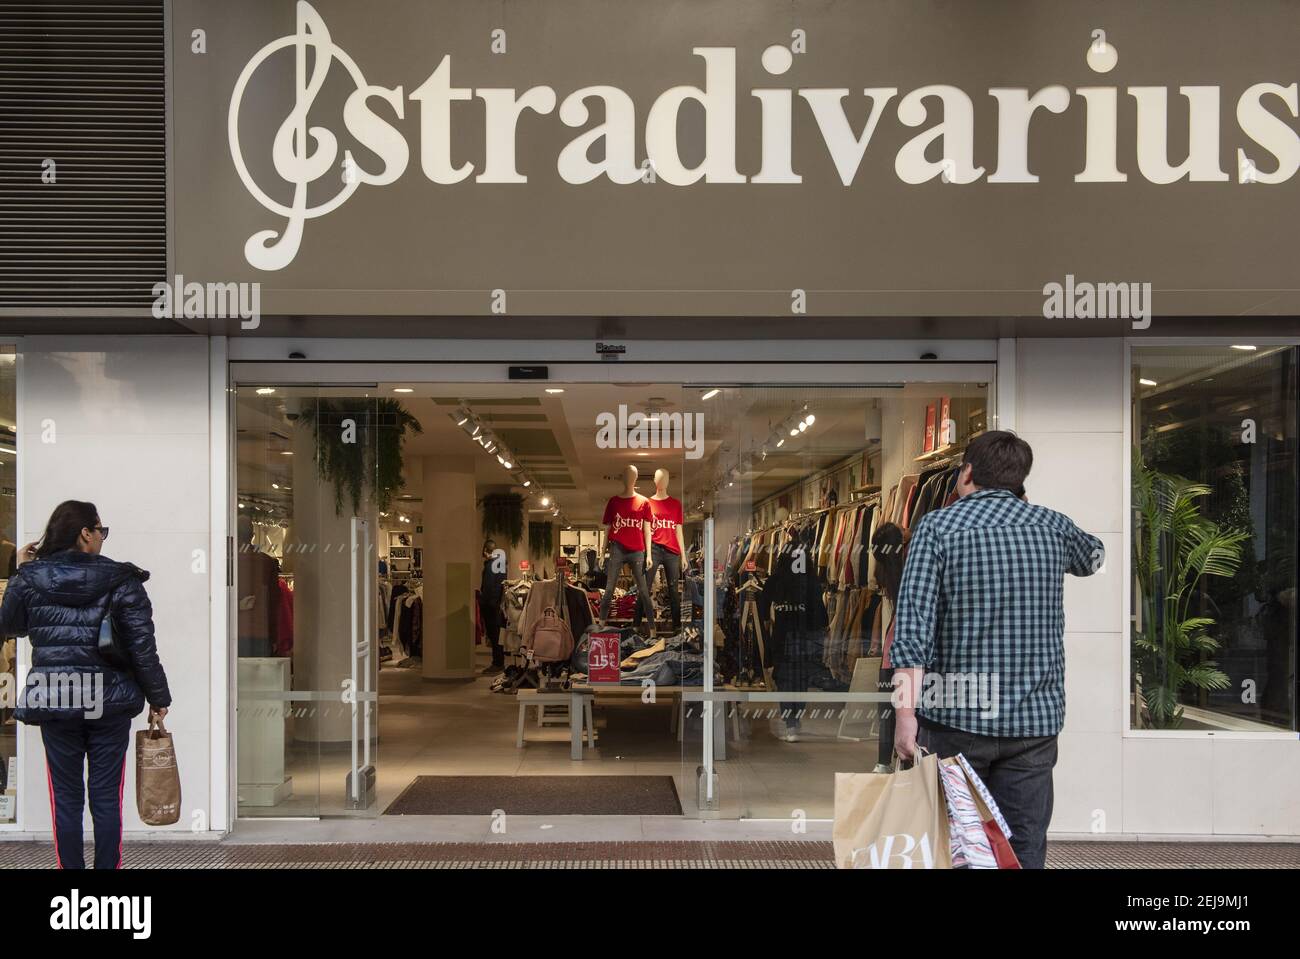 Donna spagnola abbigliamento marca di moda dalla Spagna di proprietà del  gruppo Inditex, Stradivarius, negozio visto in Spagna. (Foto di Budrul  Chukrut / SOPA Images/Sipa USA Foto stock - Alamy